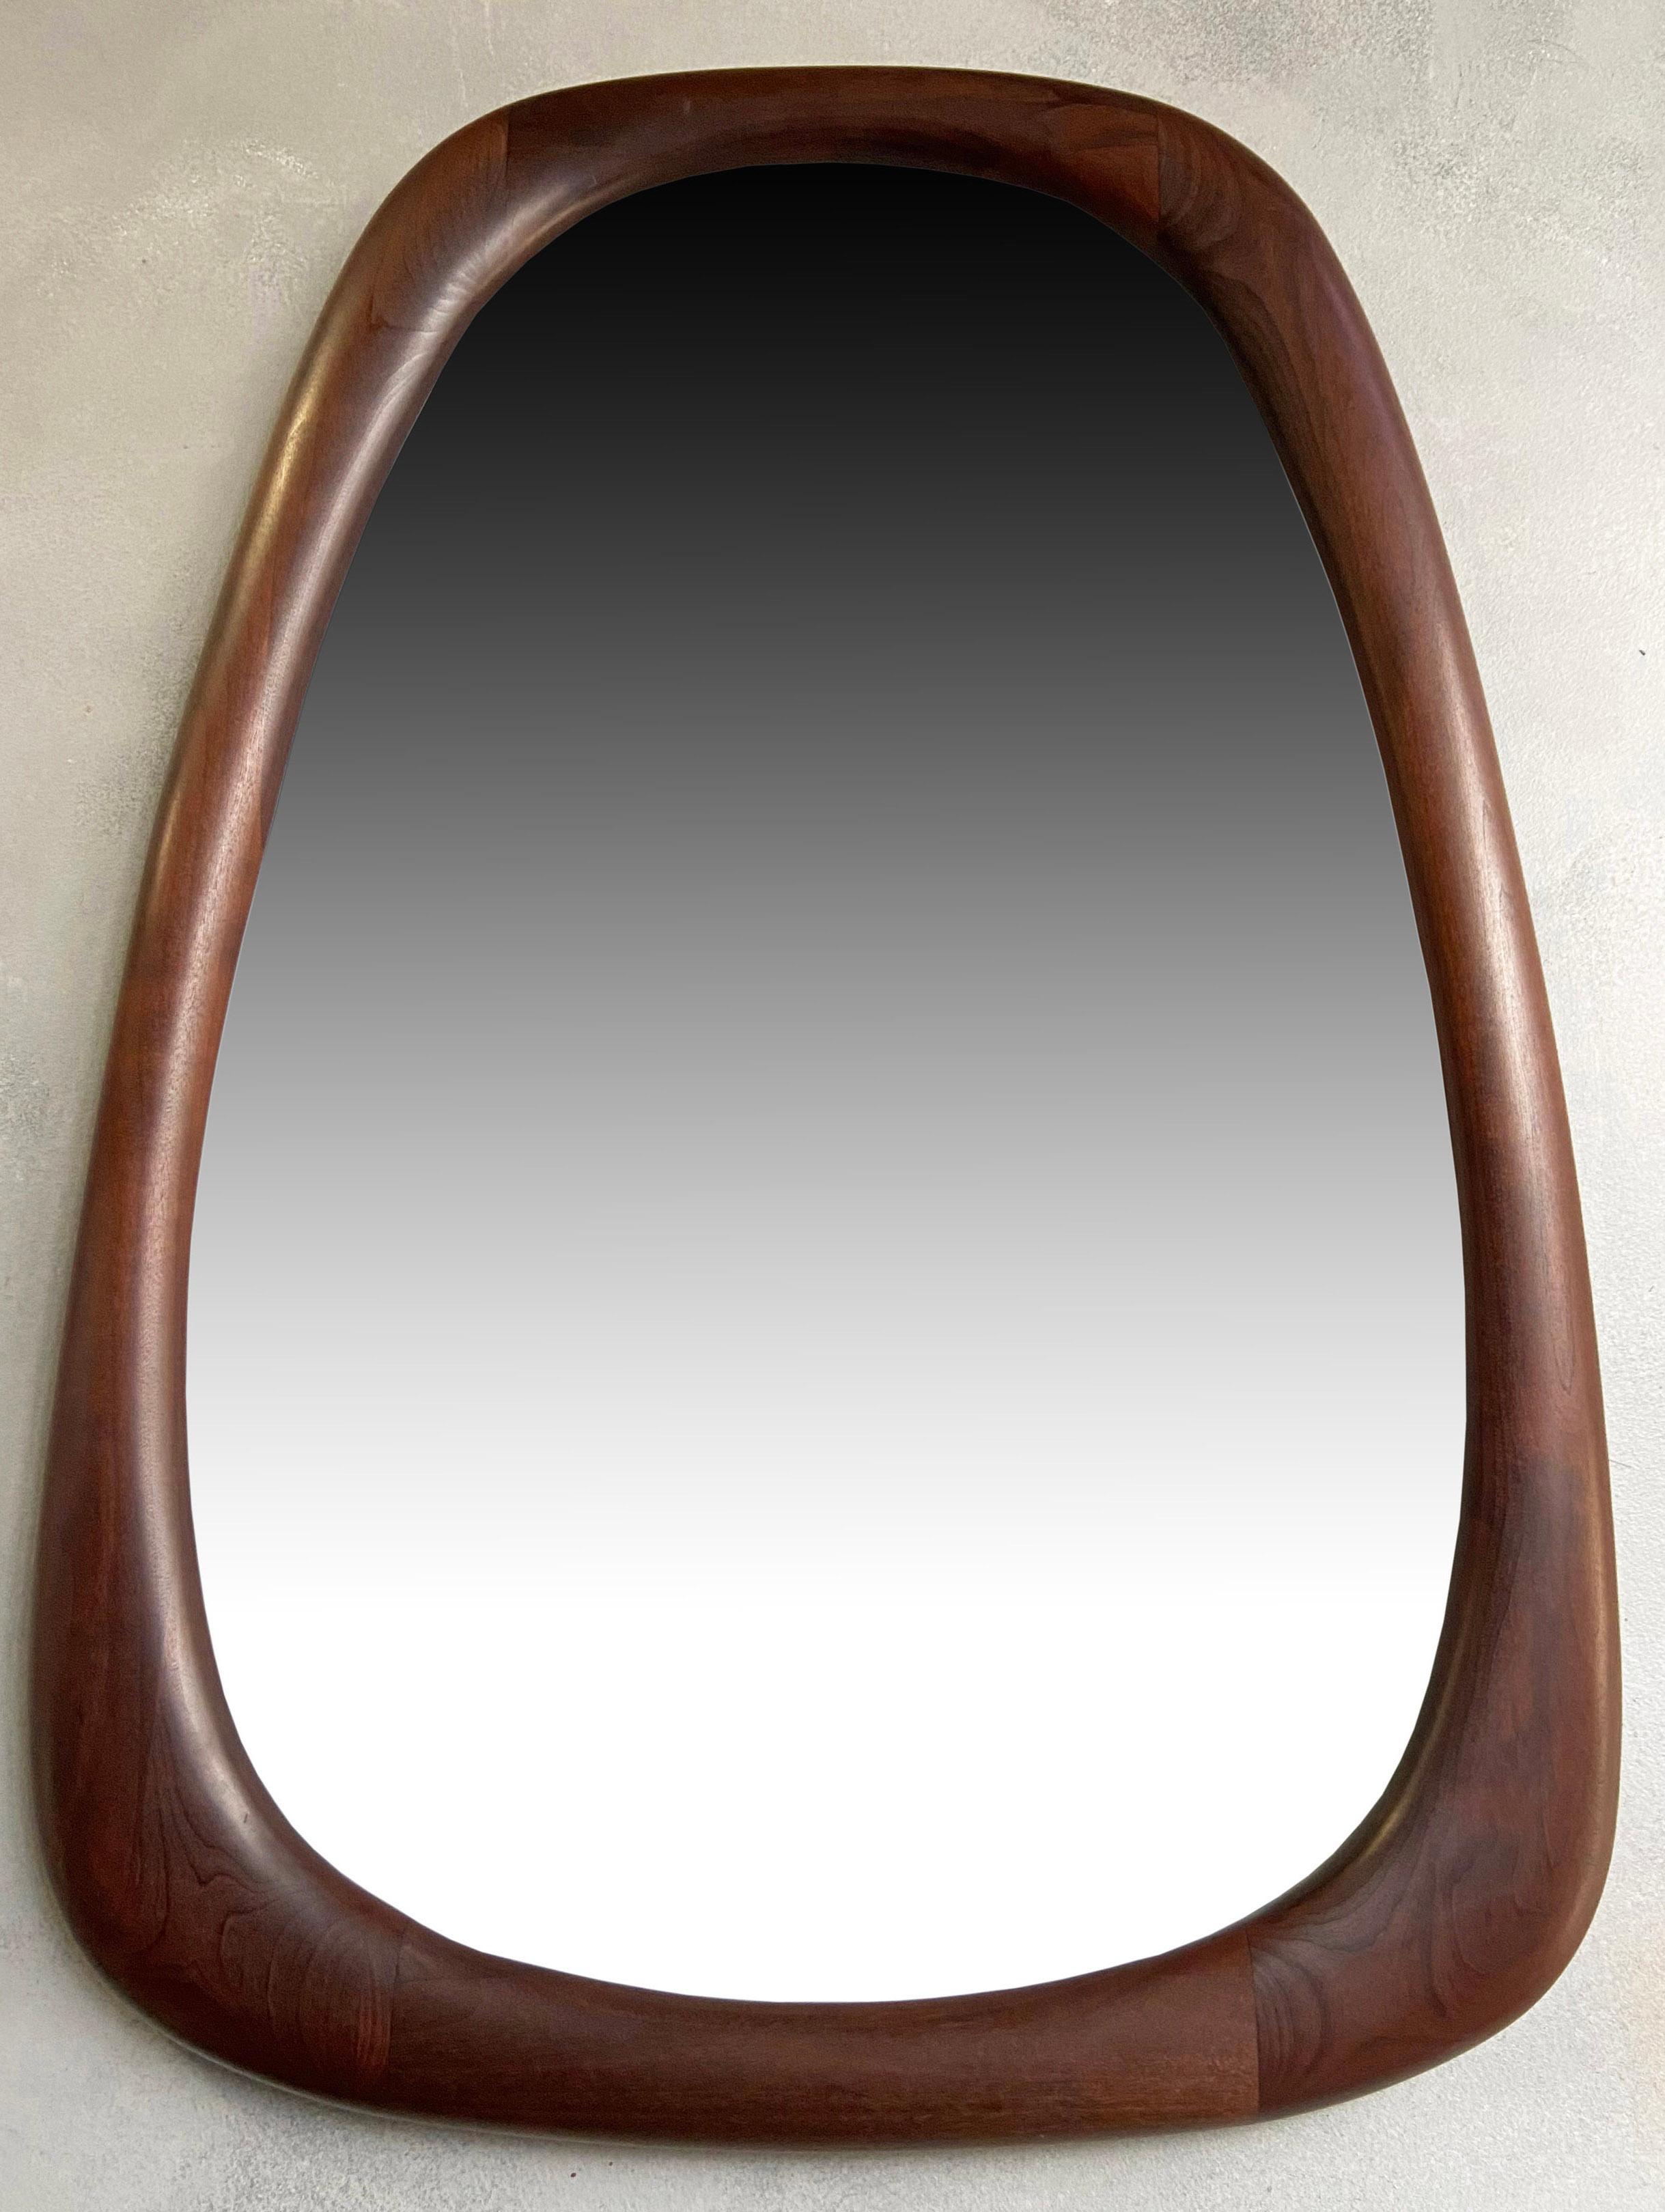 Stunning Mid-Century American Modern Craft Mirror by Dean Santner 2